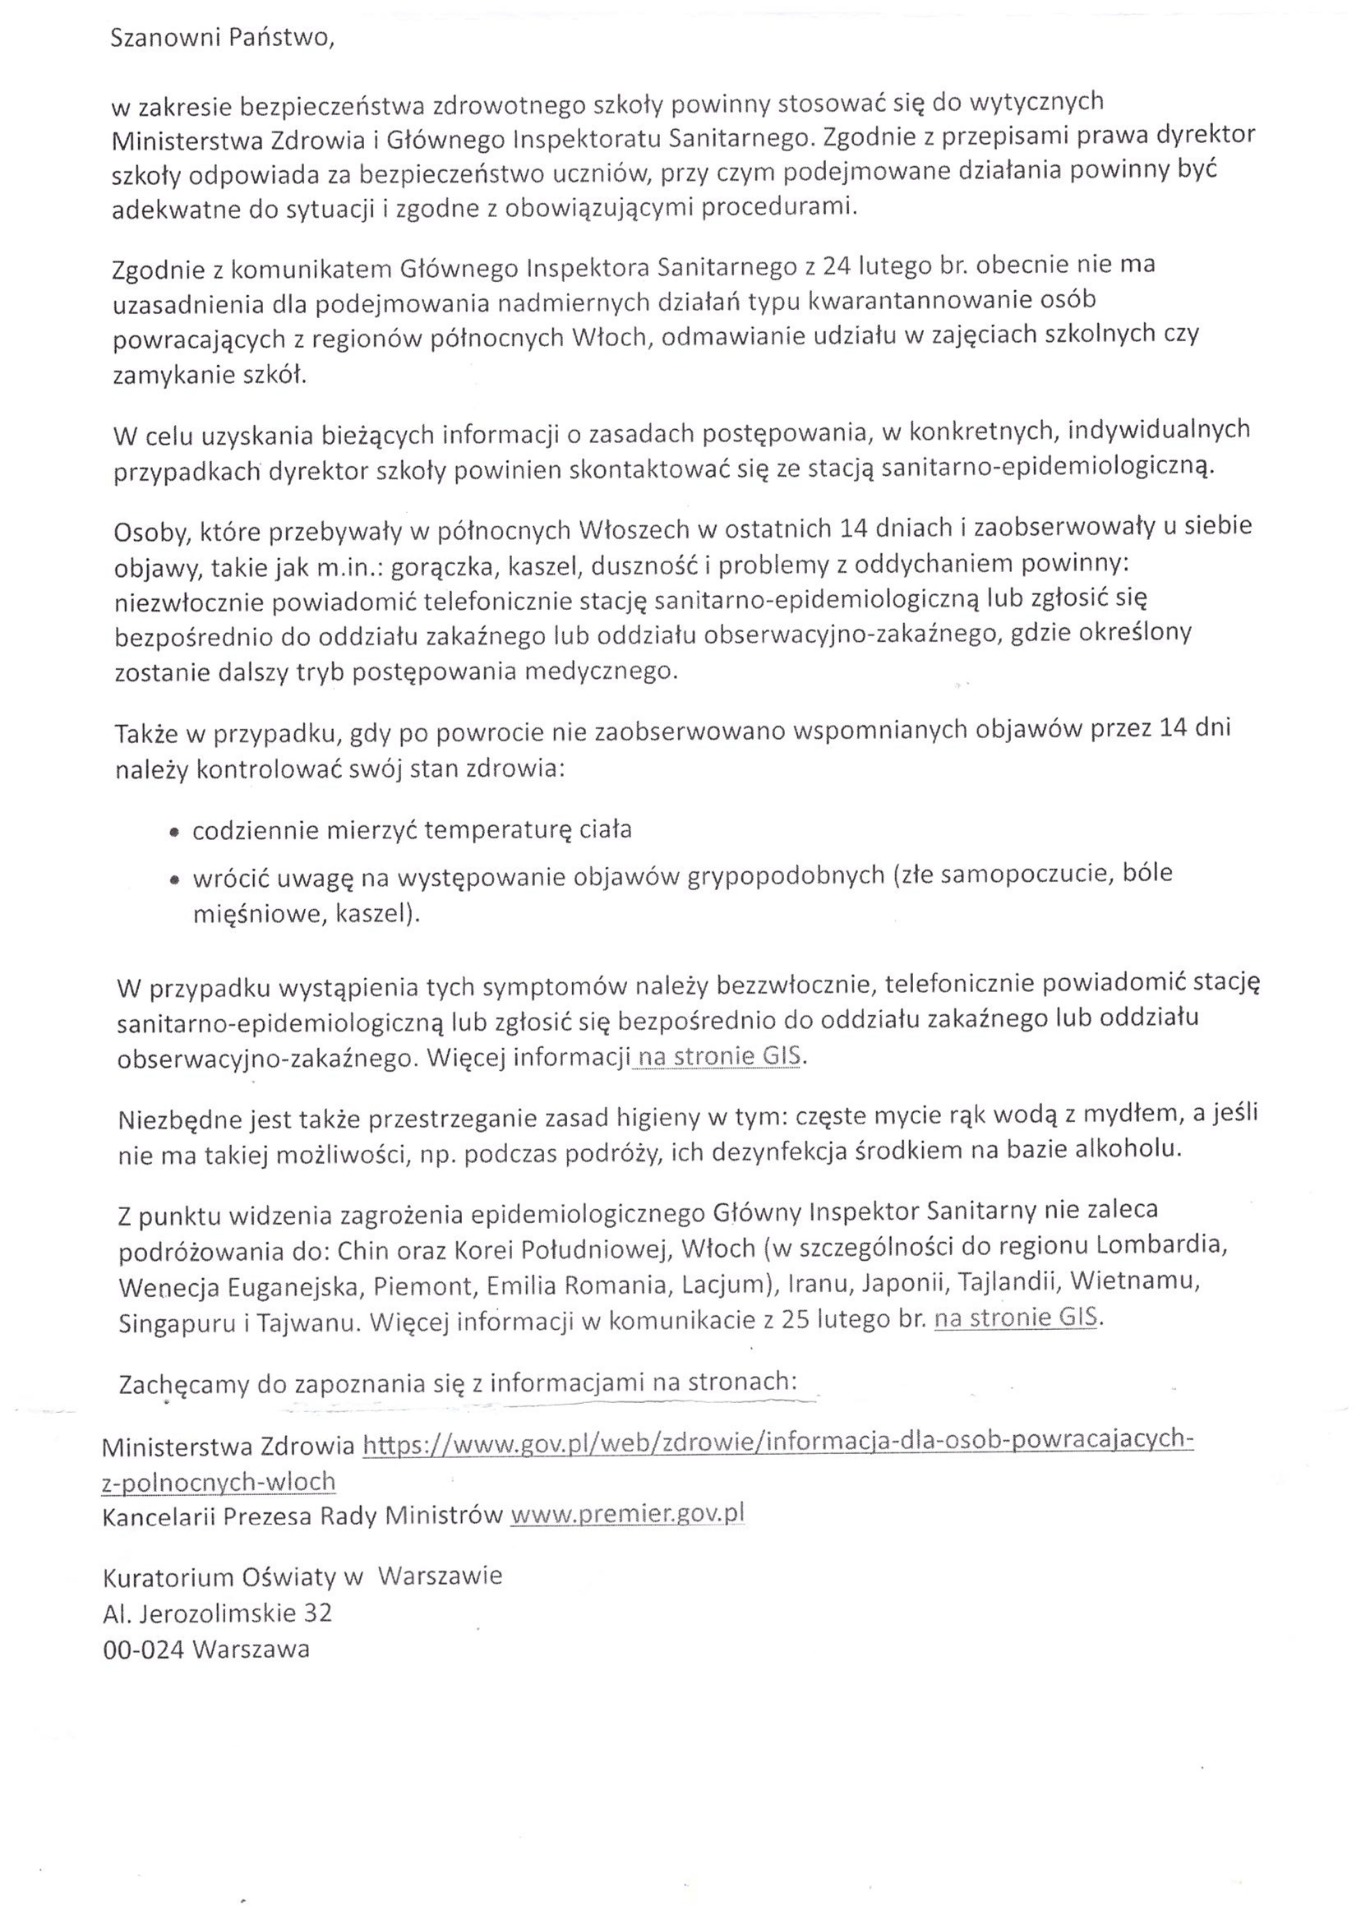 Pismo z Kuratorium Oświaty w Warszawie w sprawie koronawirusa - Obrazek 1